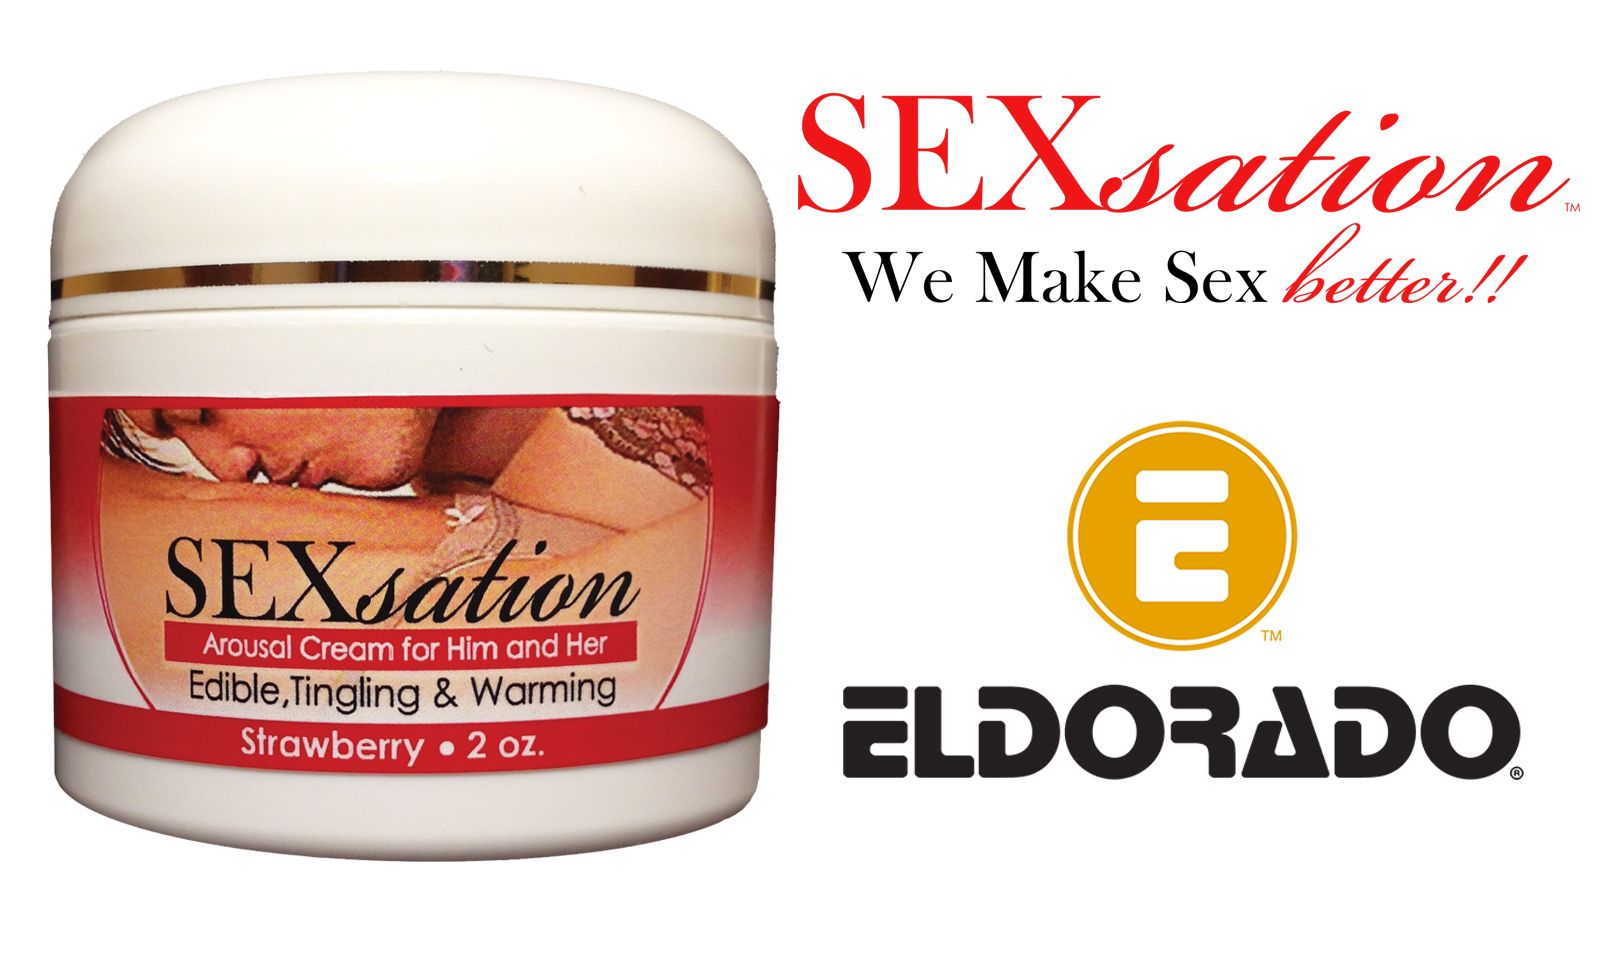 Eldorado Partners With SEXsation To Promote Creams, Oils